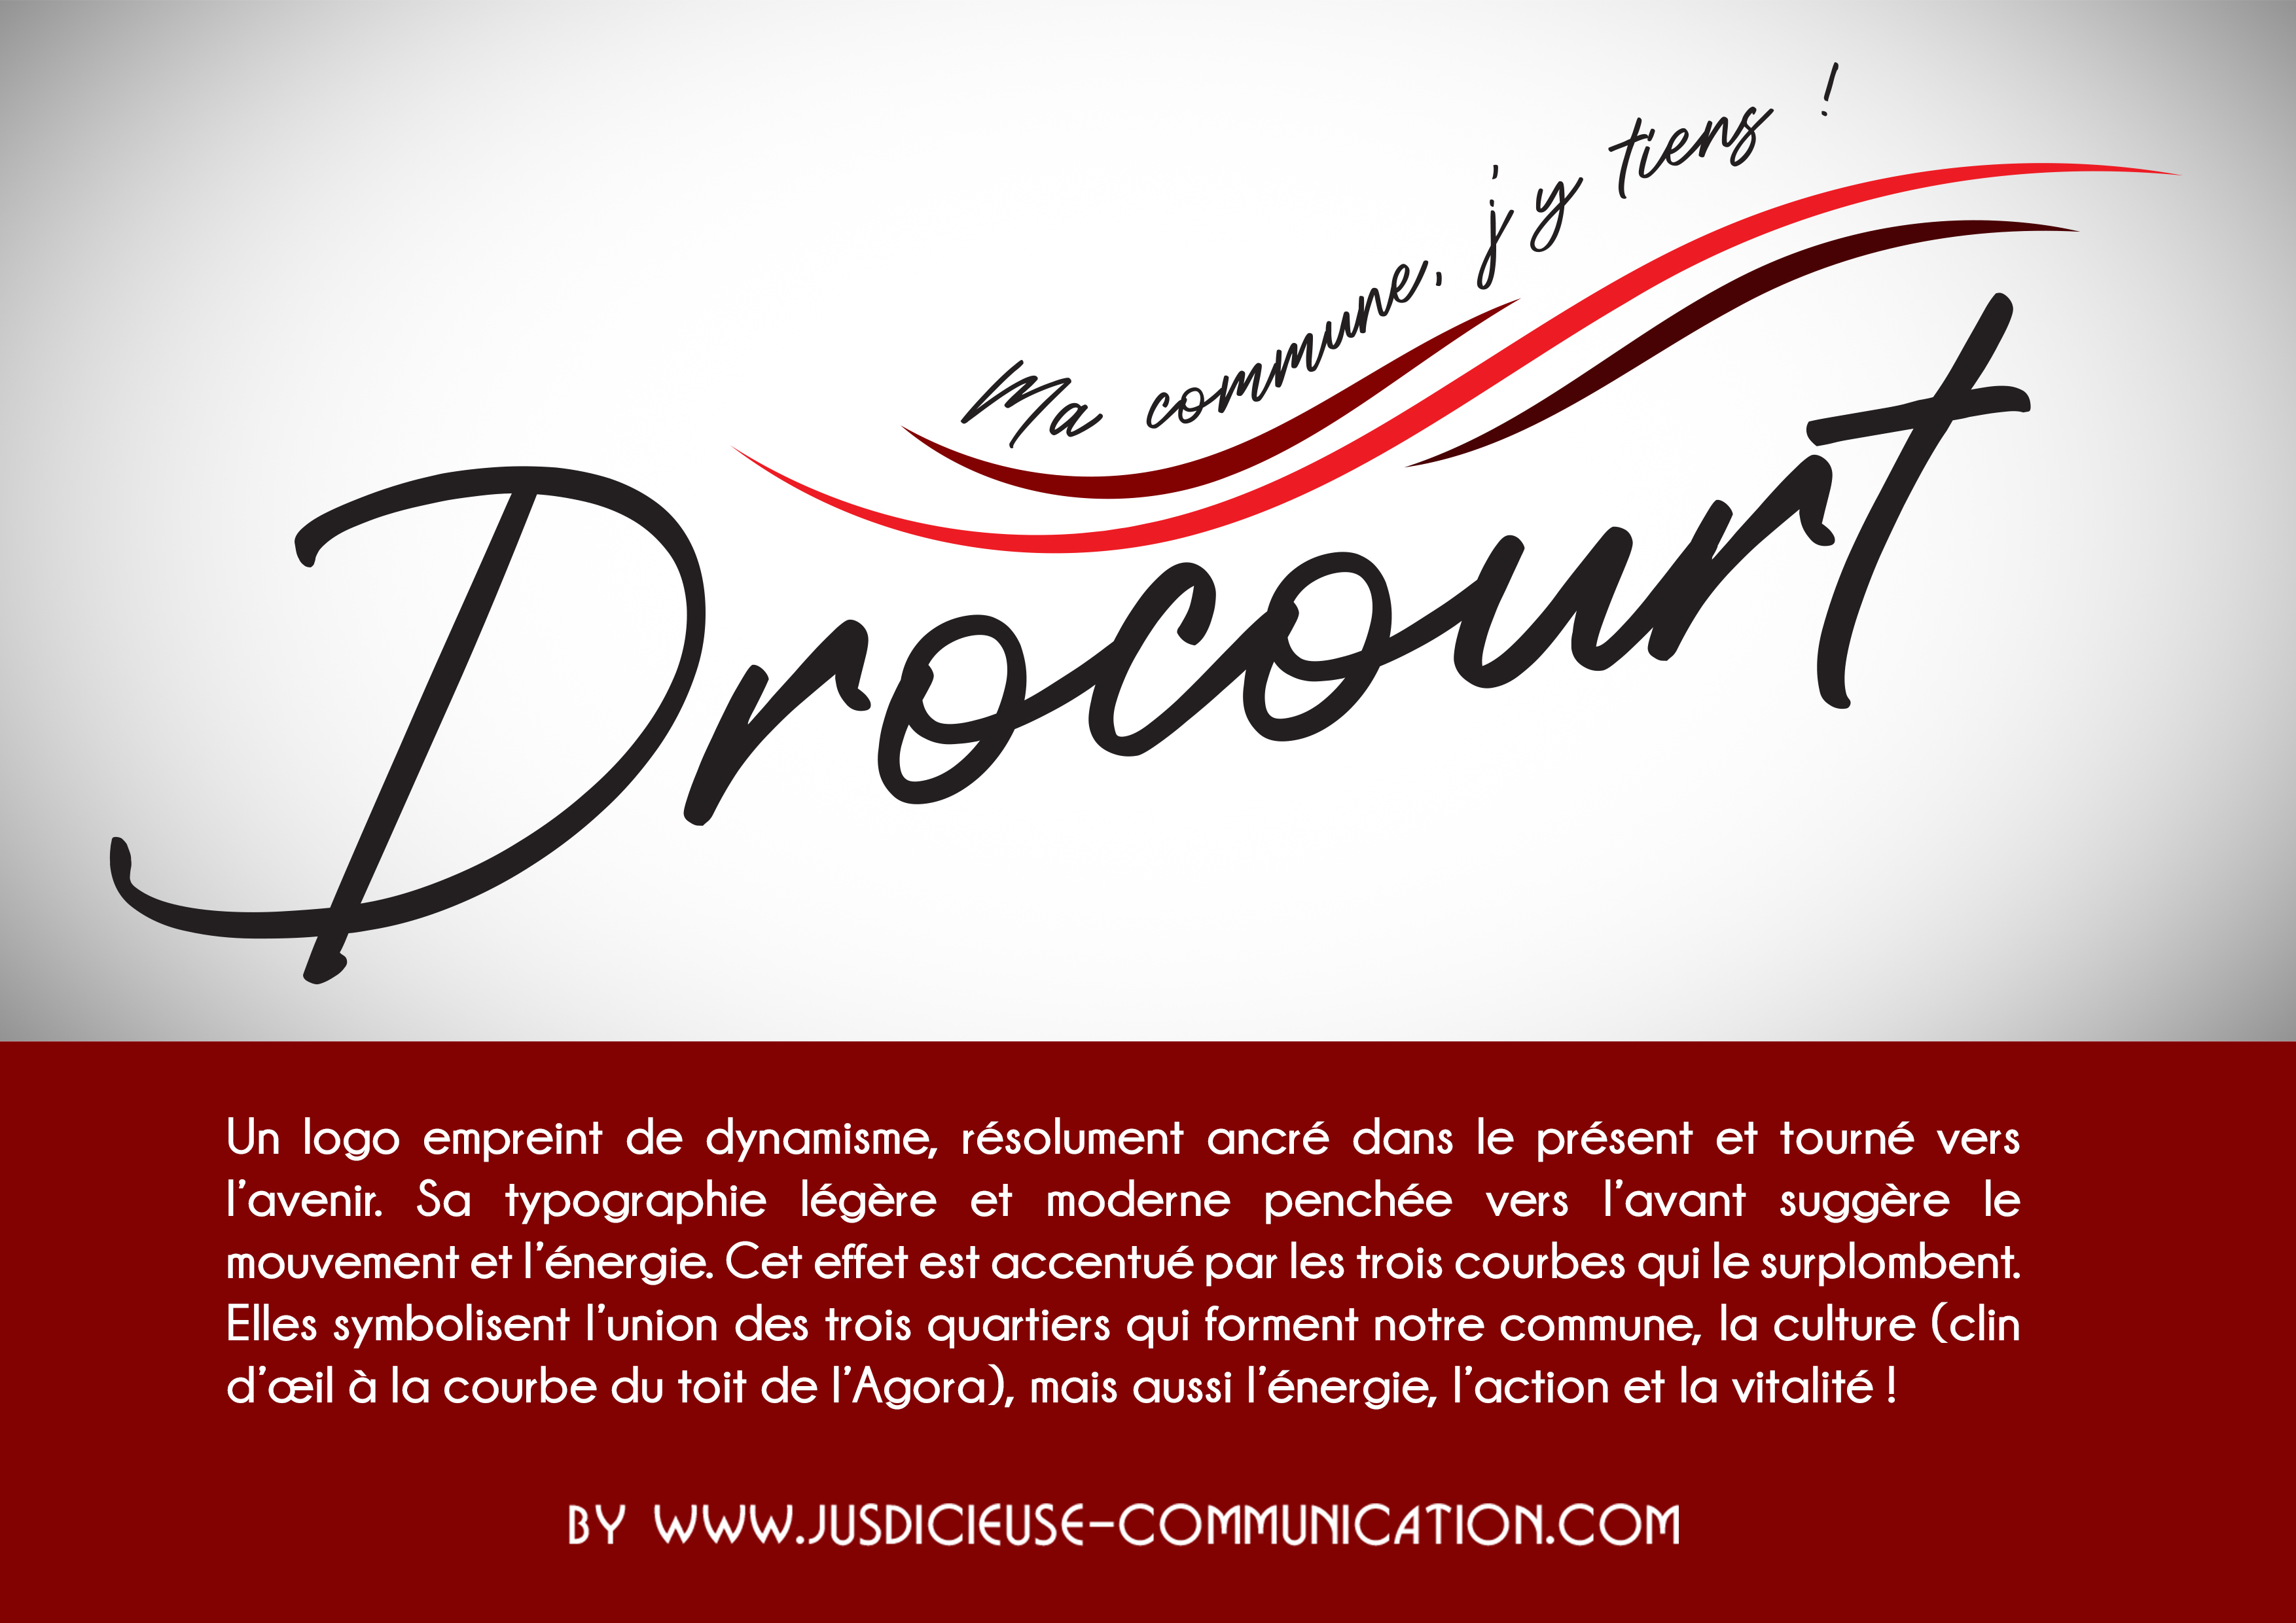 Logo-ville-de-drocourt-par-jus-dicieuse-communication-1.jpg